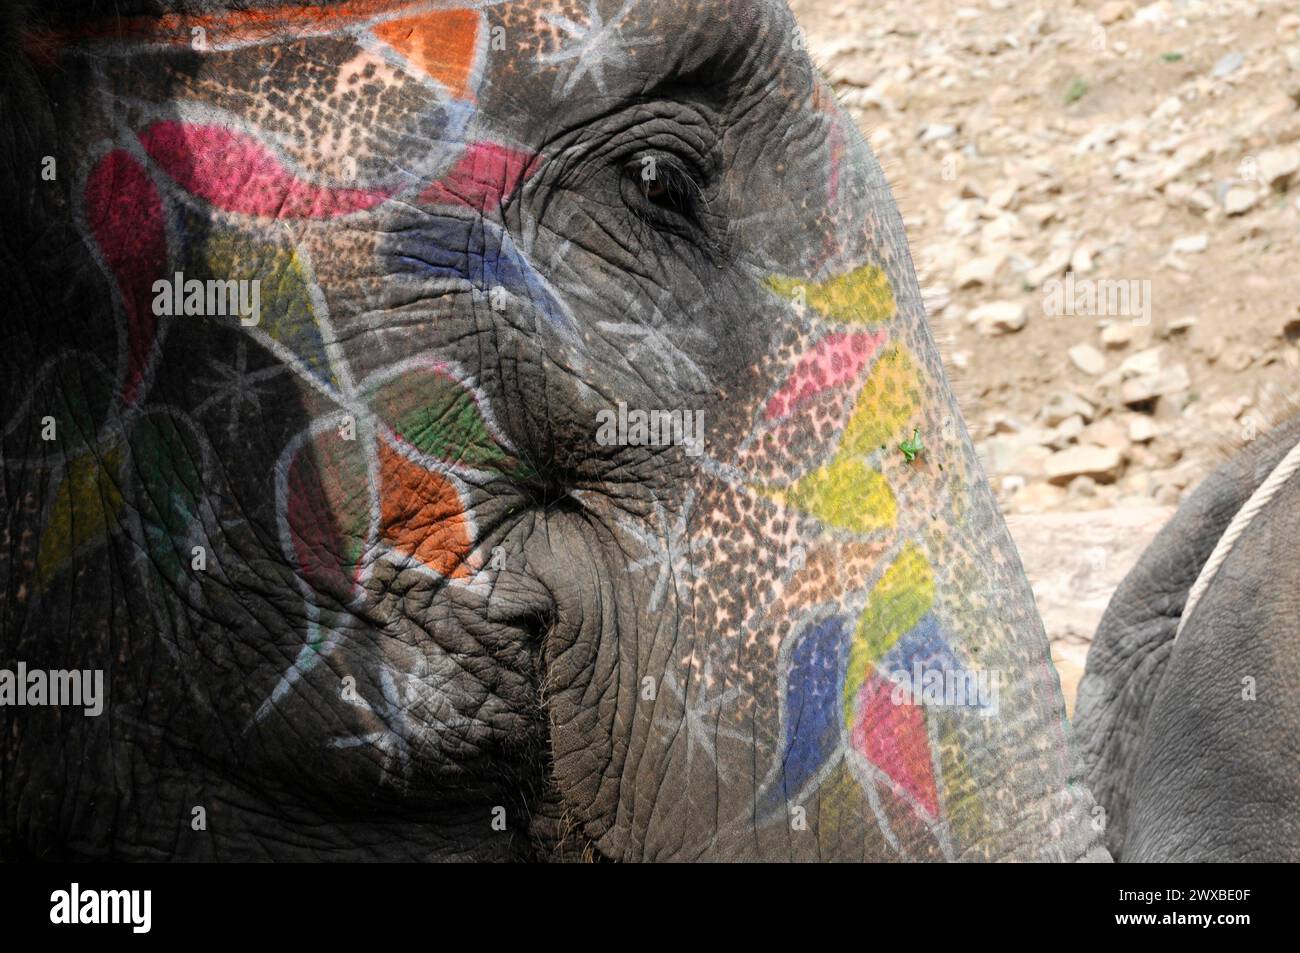 Chevauchant des éléphants à Amber Fort, Amber, près de Jaipur, Rajasthan, gros plan d'un visage d'éléphant peint de couleurs vives avec accent sur la texture de la peau Banque D'Images